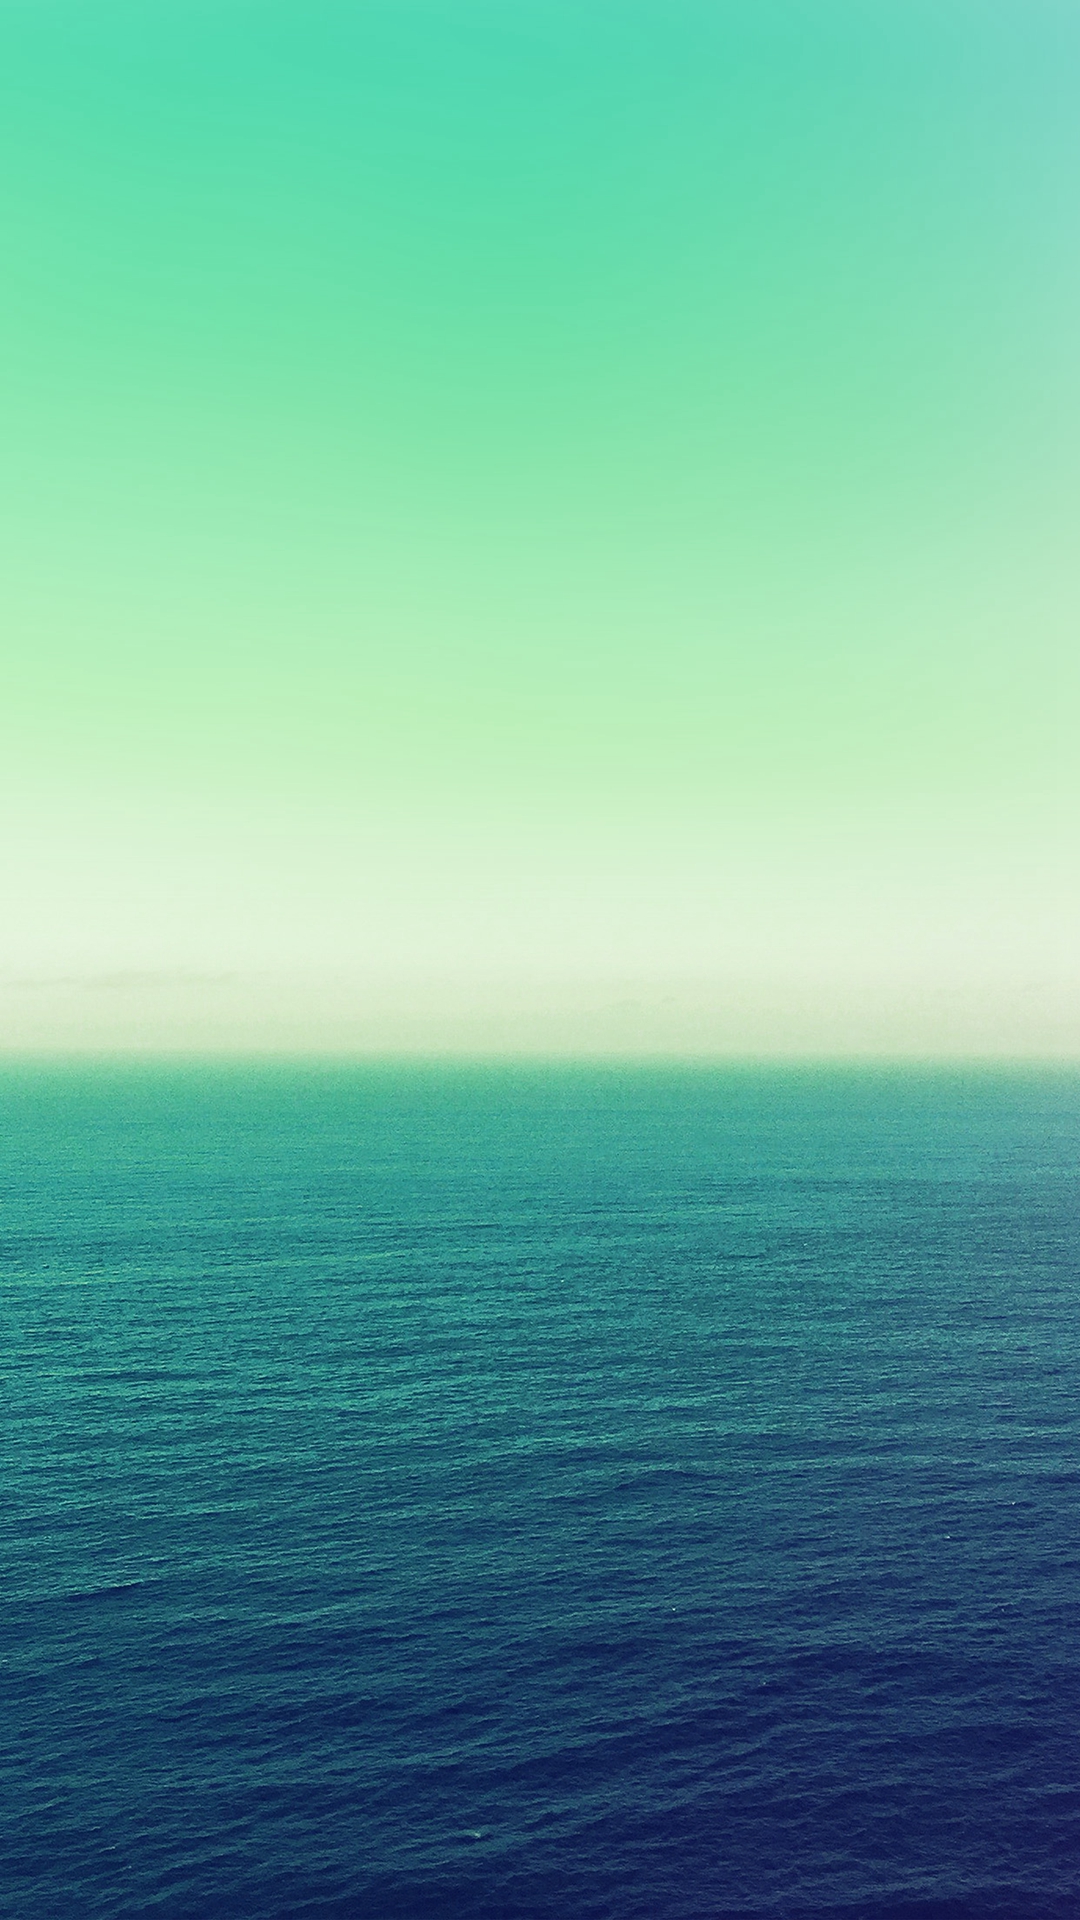 海の緑の壁紙,地平線,空,海,緑,青い